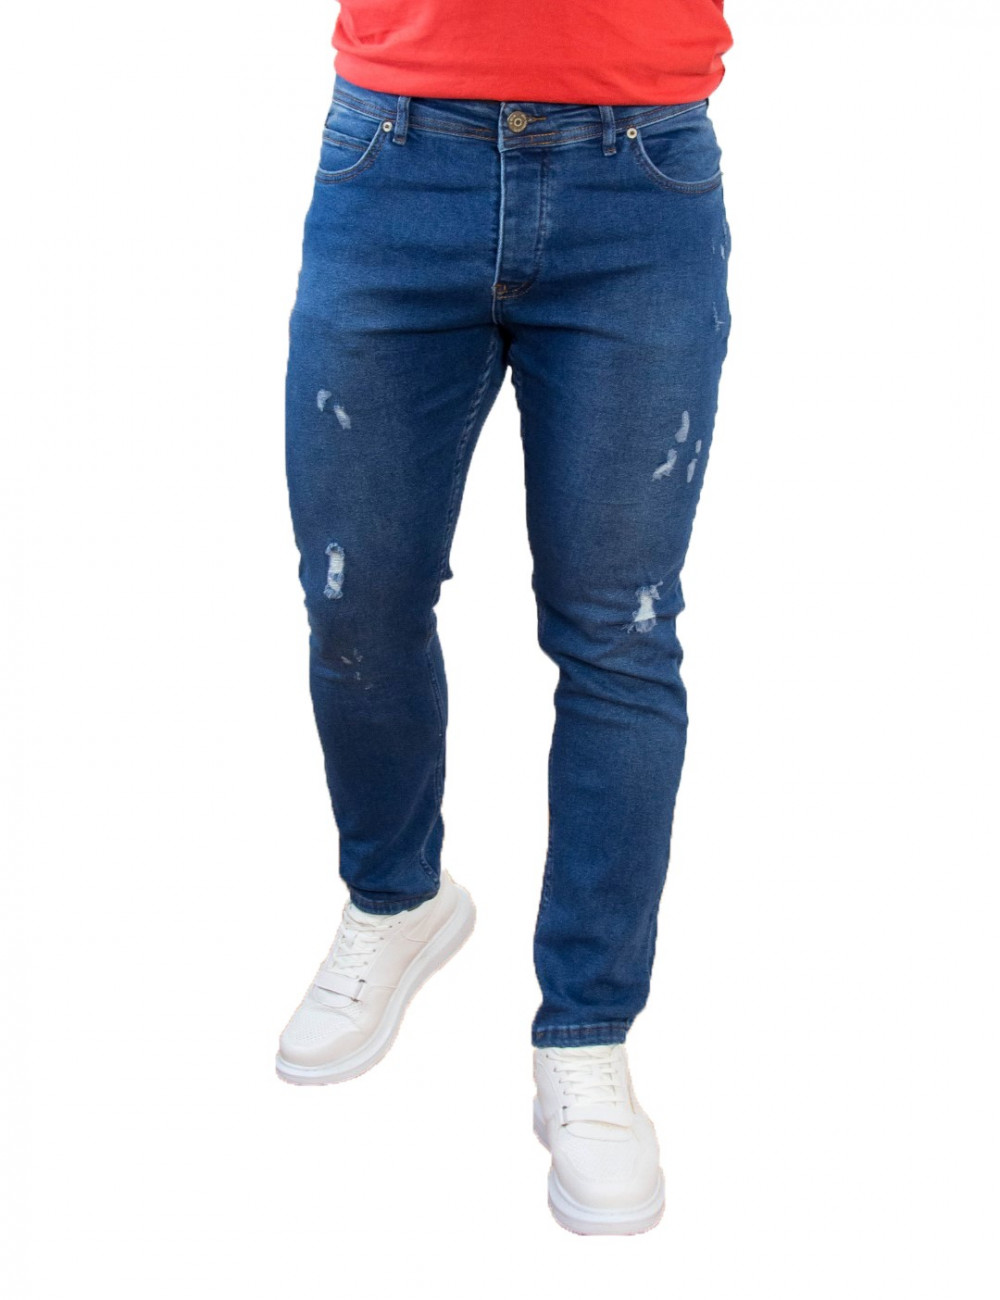 Ανδρικό μπλε τζιν παντελόνι με φθορές DR4081